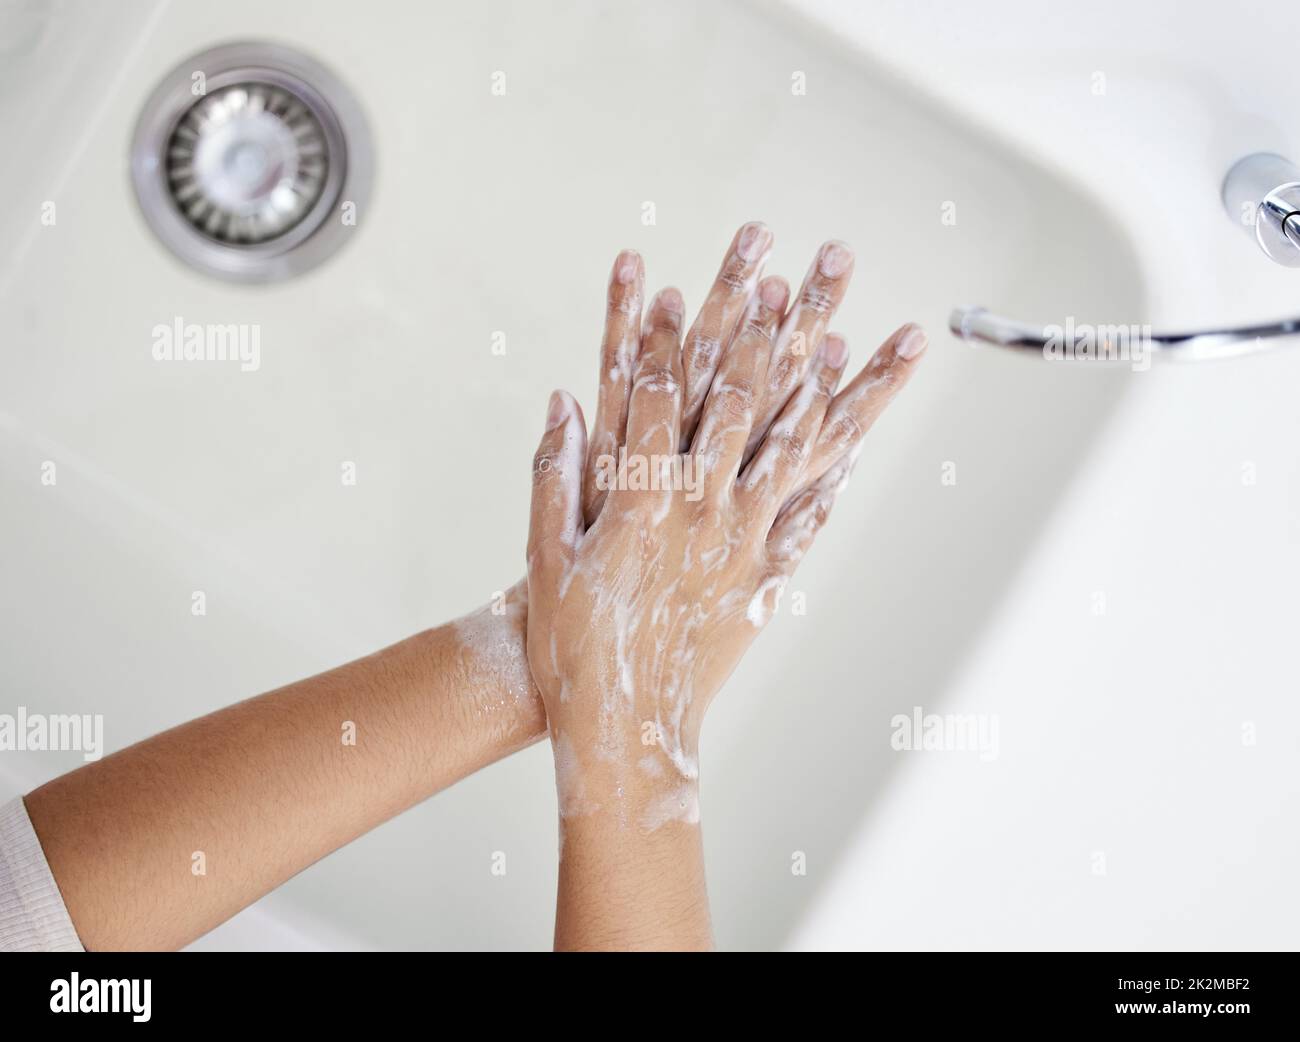 Lávese bien las manos. Disparo de una persona irreconocible lavándose las manos en casa. Foto de stock